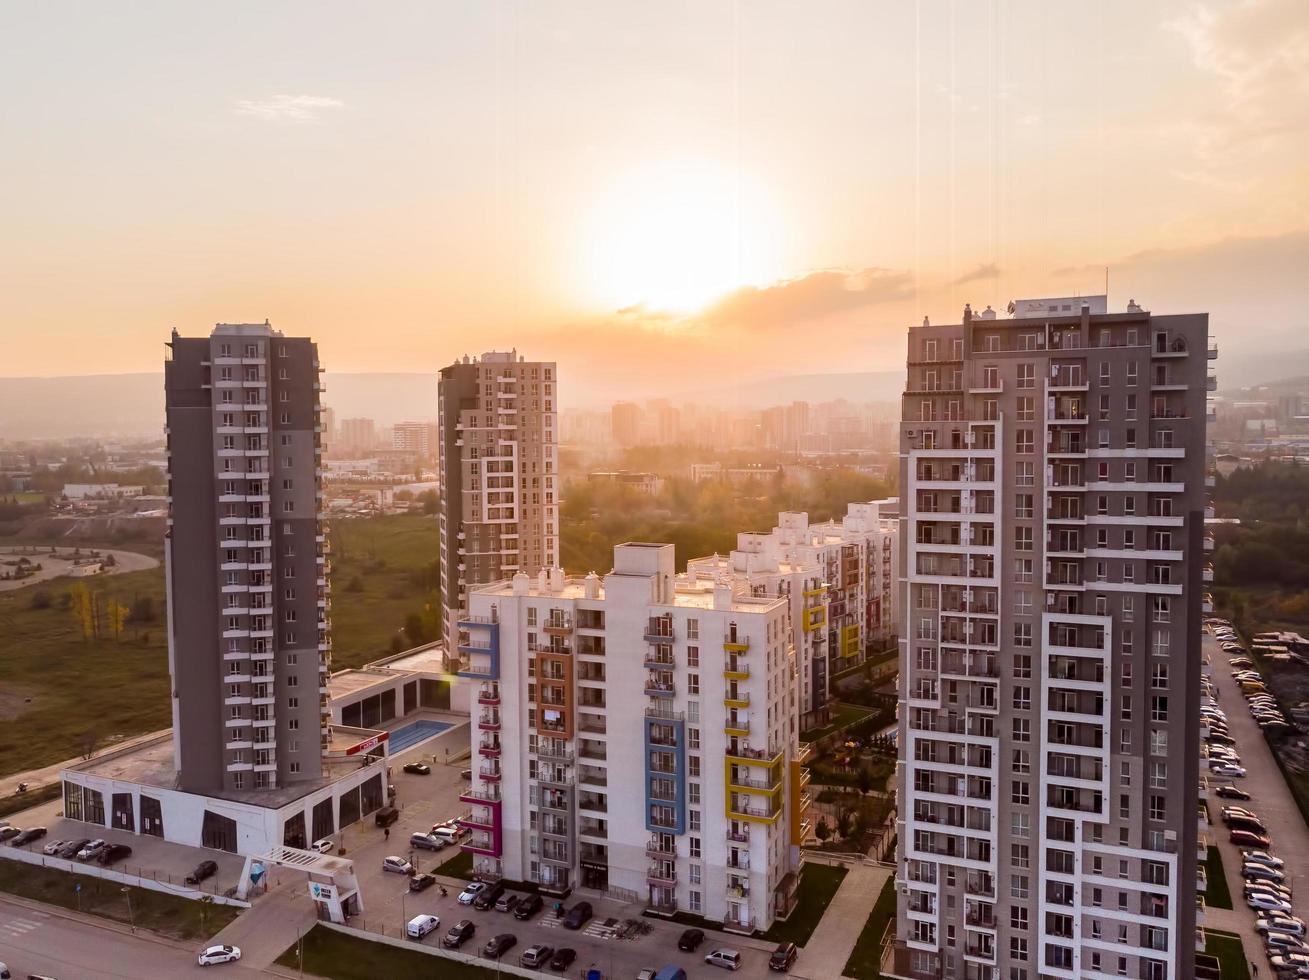 tbilisi, Georgië, 2021 - groen diamant appartementen complex gebouwen panorama met zonnig zonsondergang achtergrond. Georgië echt landgoed eigendom bedrijf industrie concept foto